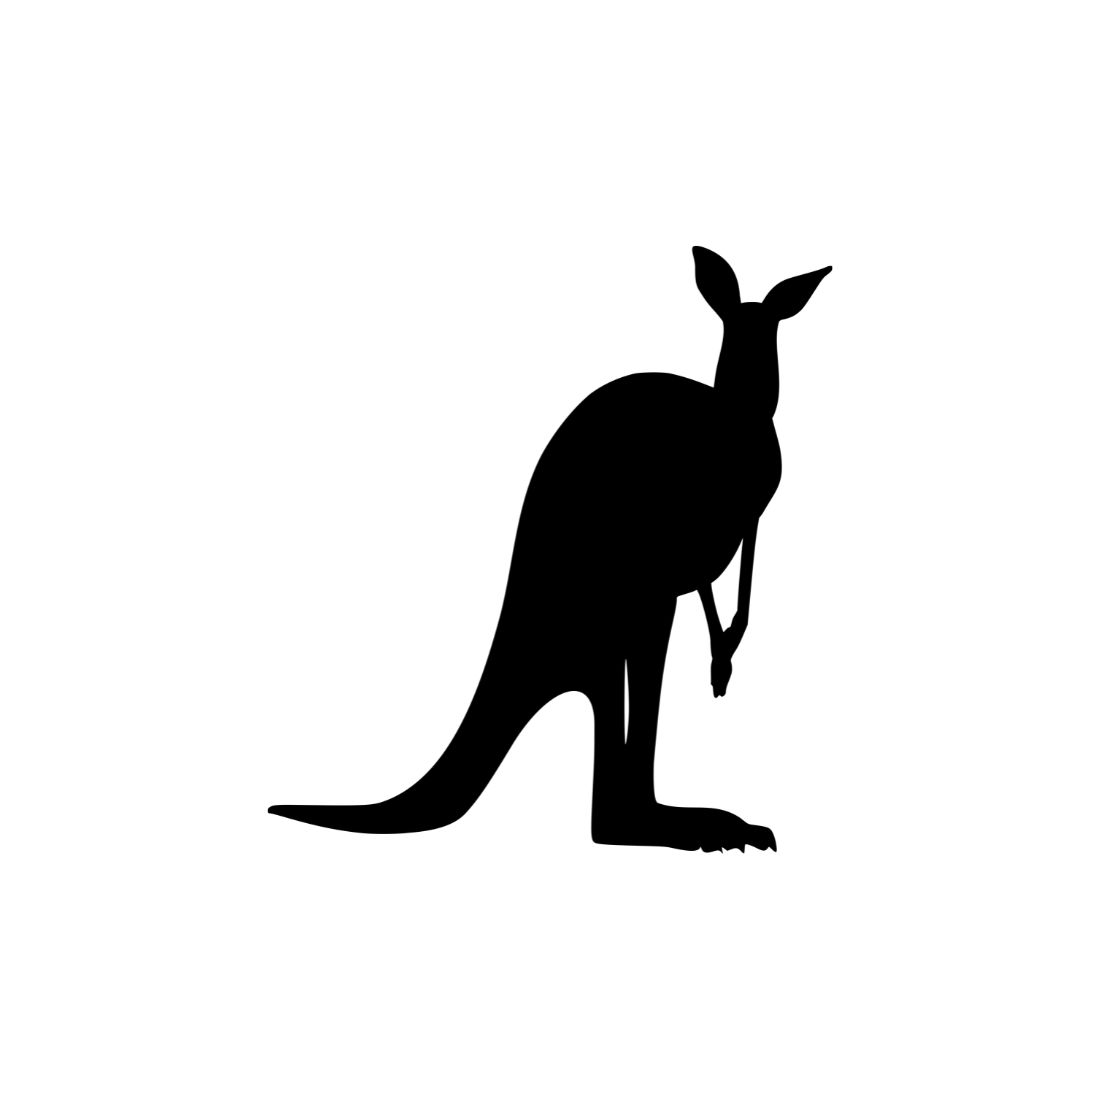 Kangaroo Silhouette collection.